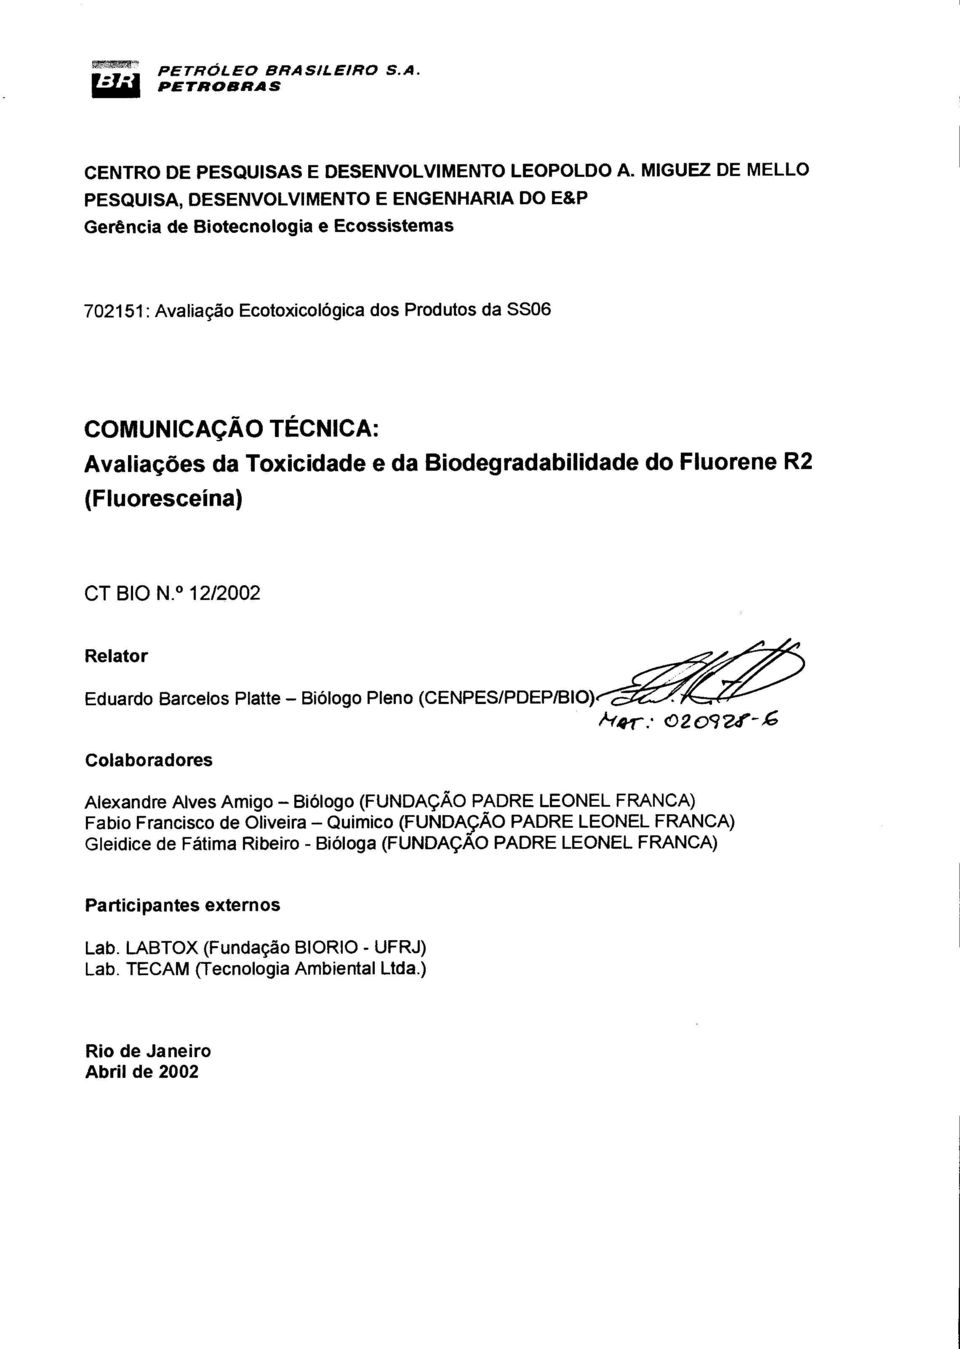 Toxicidade e da Biodegradabilidade (Fluoresceína) do Fluorene R2 CT 810 N.o 12/2002 R e I ato r ~~~~~~.